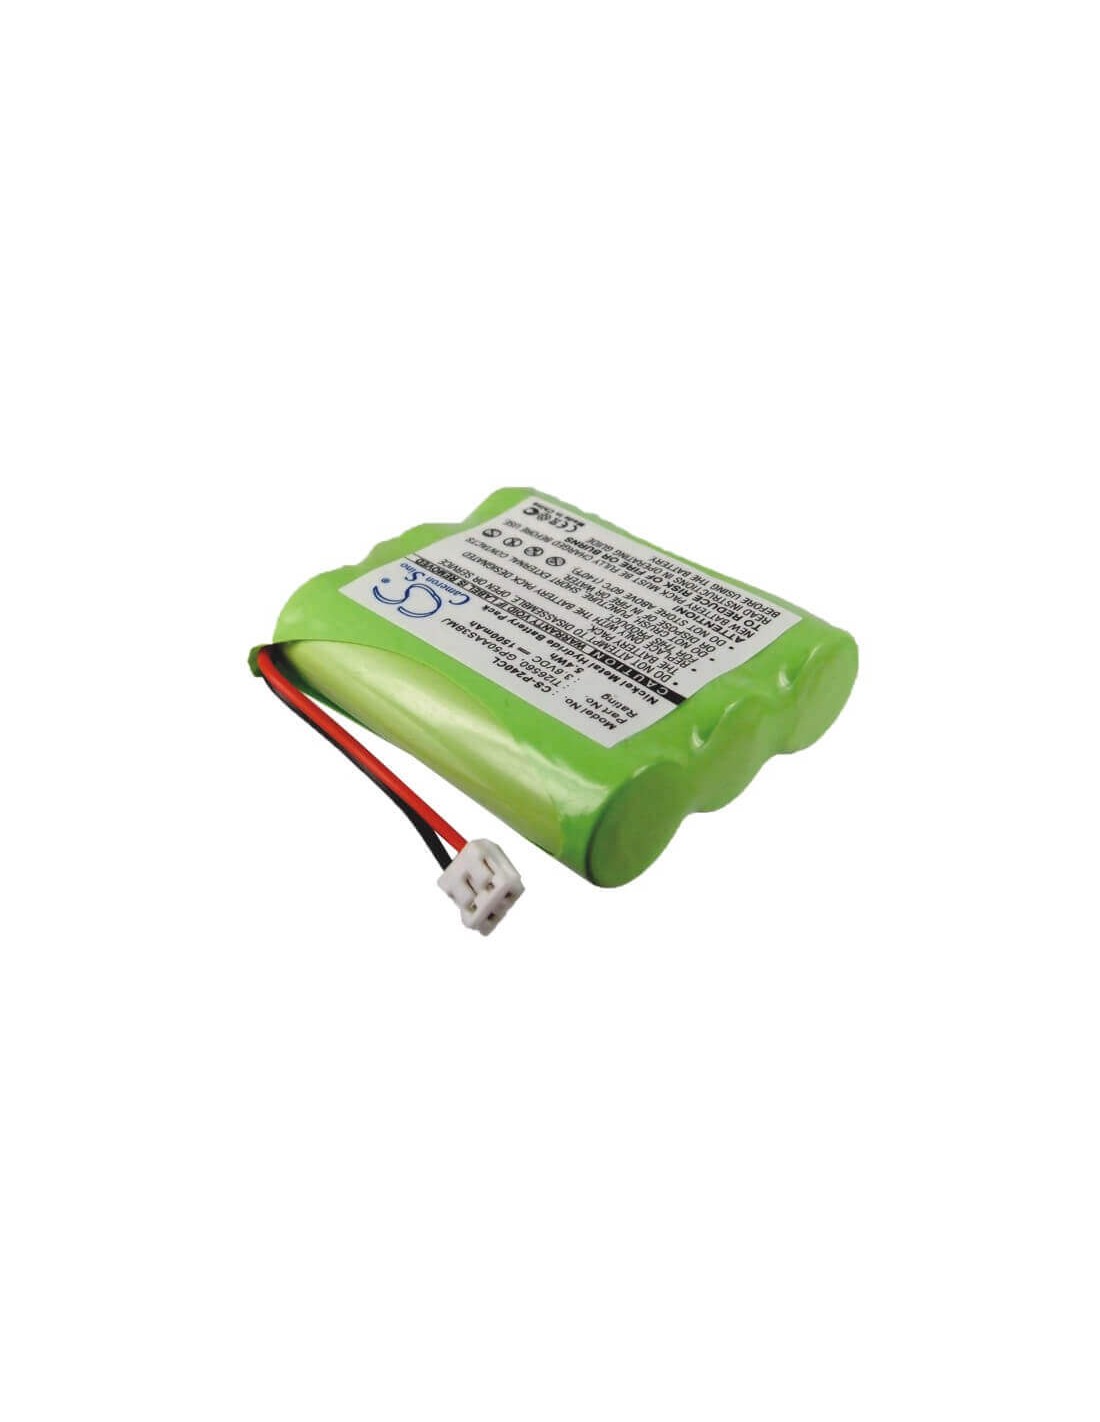 Battery for Radio Shack, 23-9107, 43-0689, 43-1089, 3.6V, 1500mAh - 5.40Wh